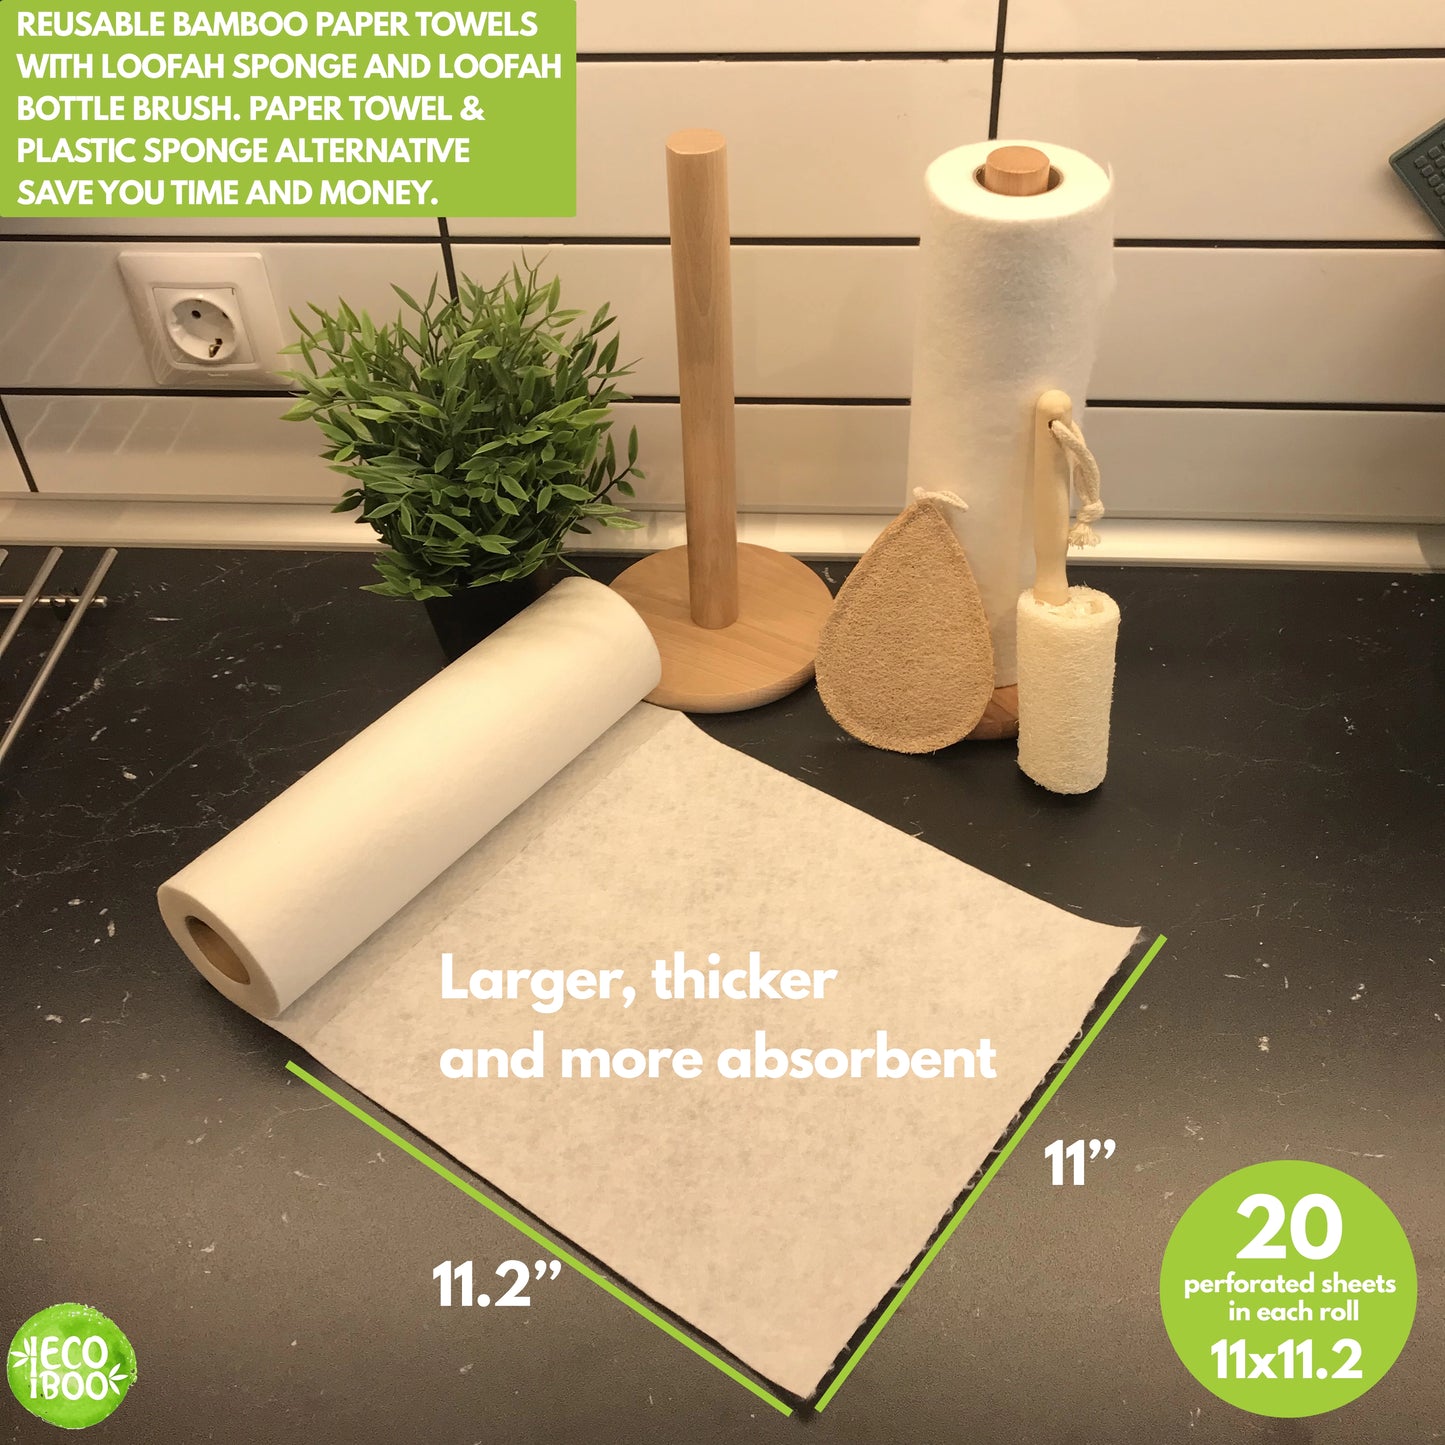 Reusable paper towel sheet size 11x11.2. Reusable paper towel set with loofah sponges